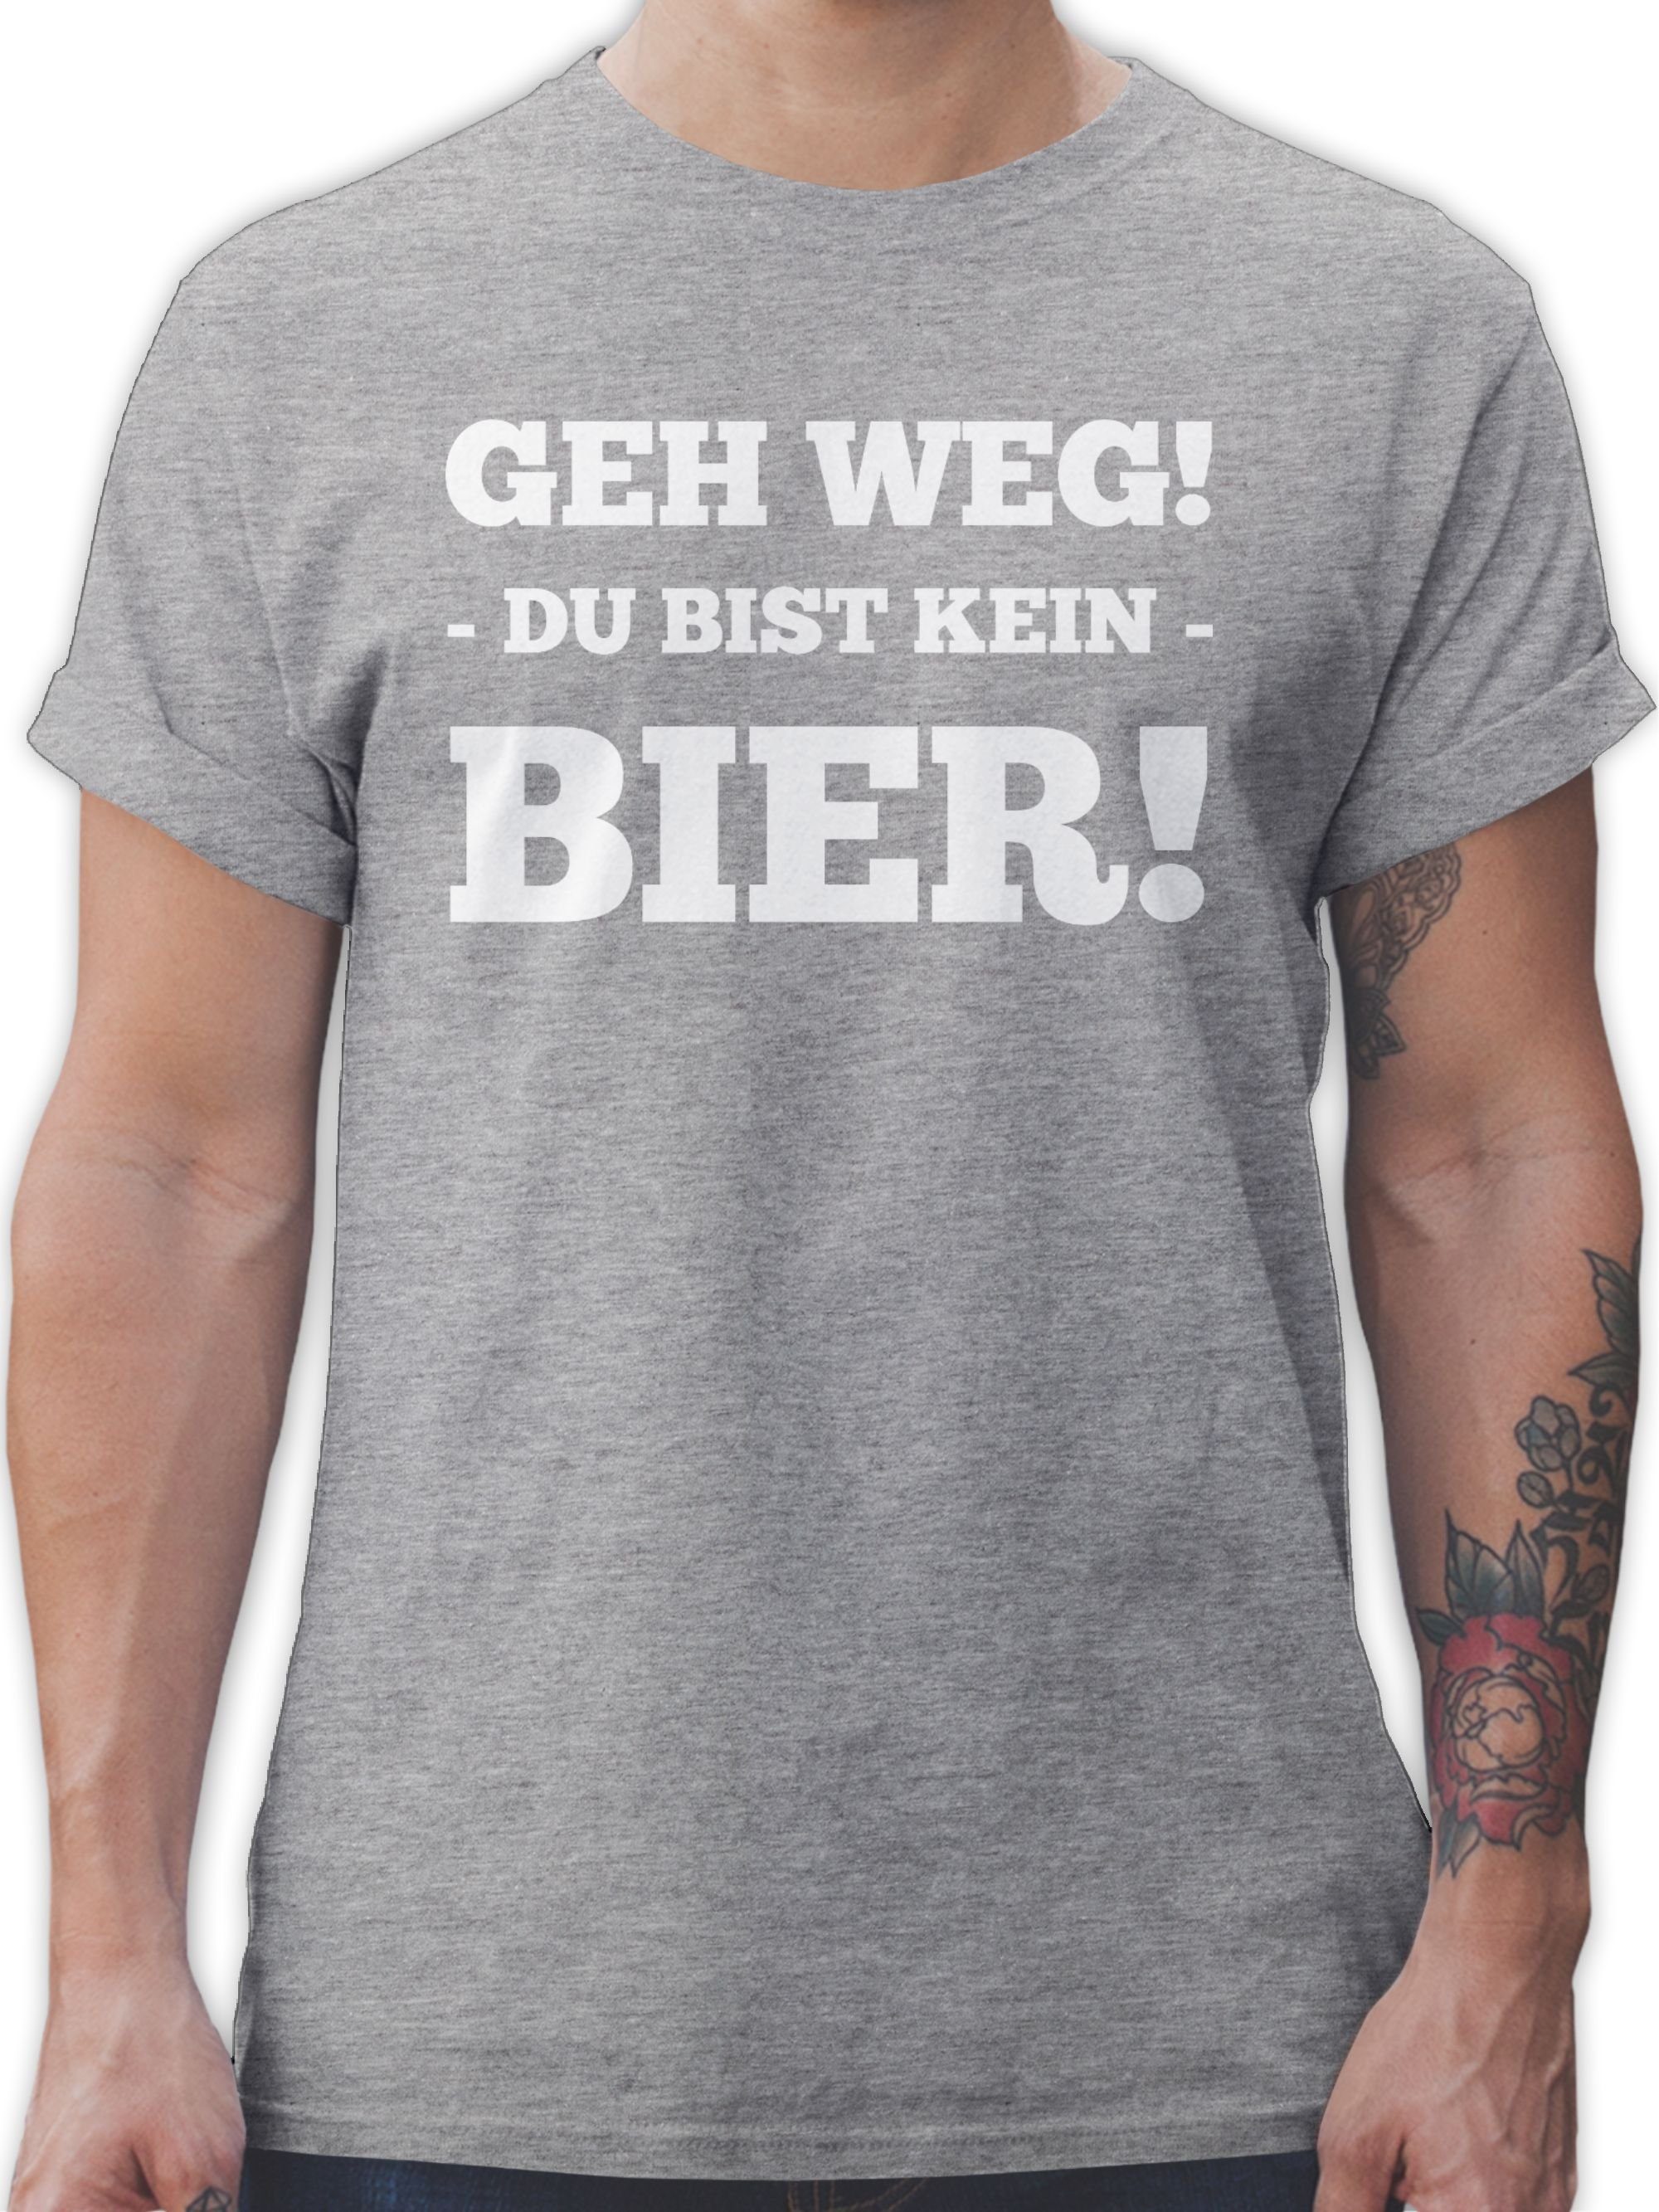 Geh T-Shirt mit Du Statement - Shirtracer Grau kein meliert Sprüche Weg bist Spruch 3 Bier